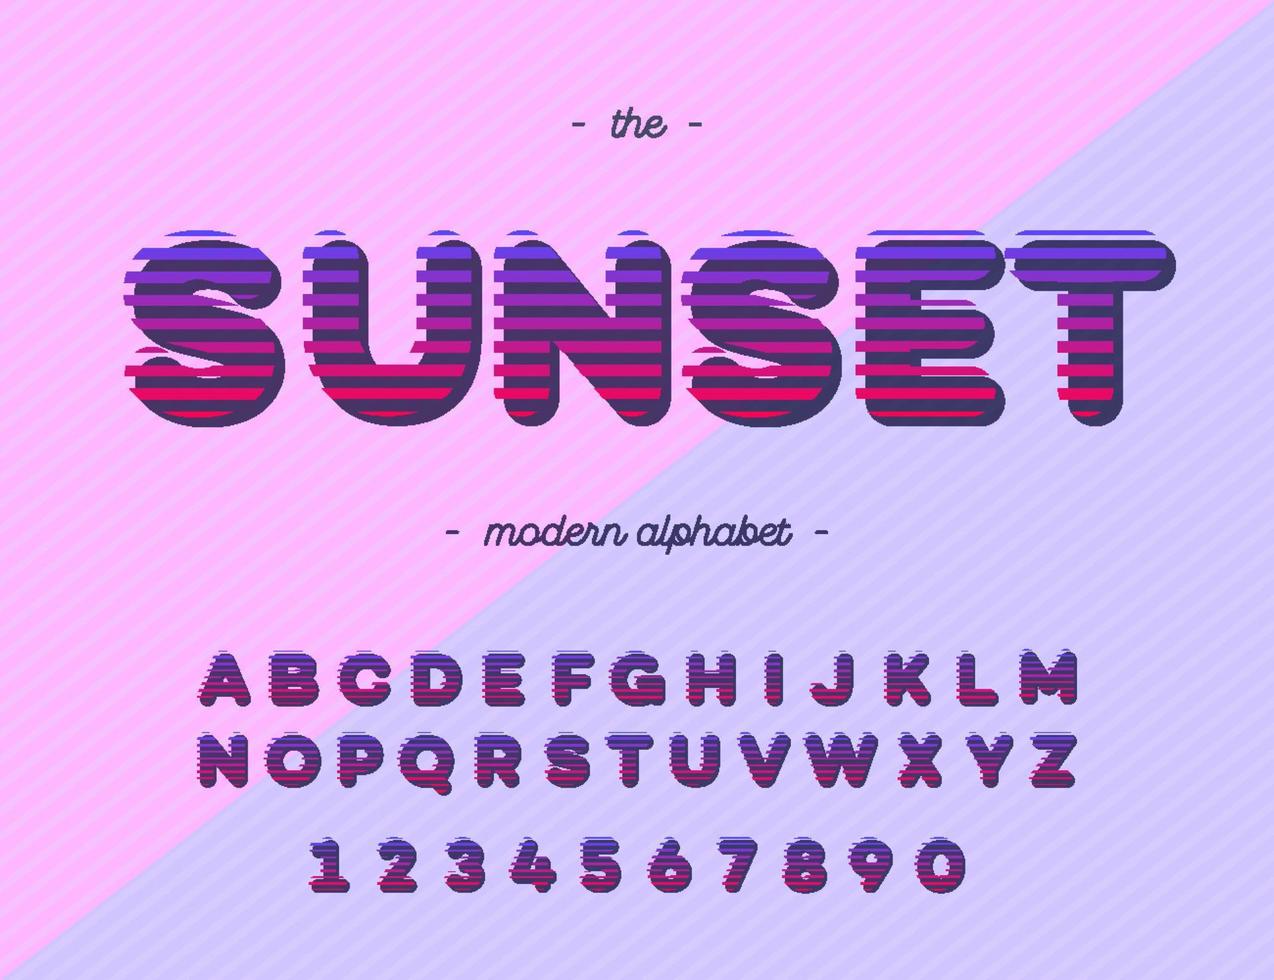 tipografia vector pôr do sol boa tipografia. fonte legal.